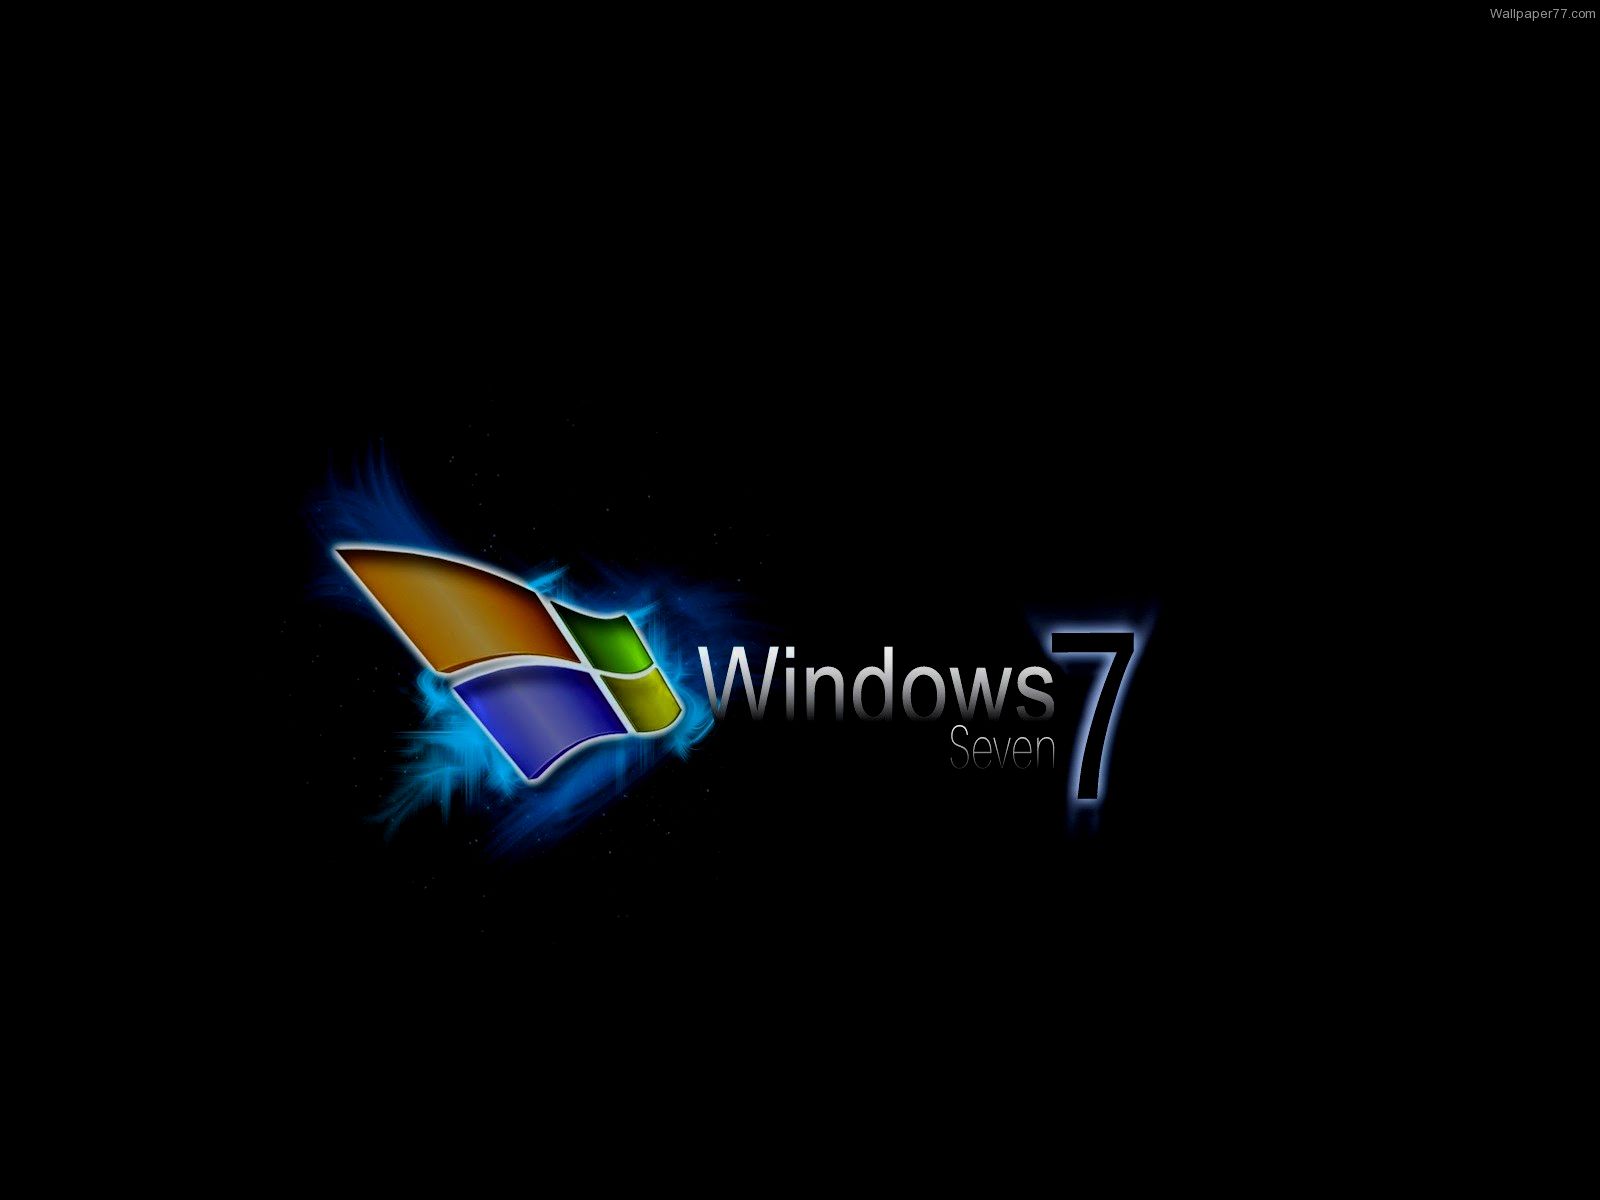 Live Wallpaper Windows 7 16001200 High Definition Wallpaper